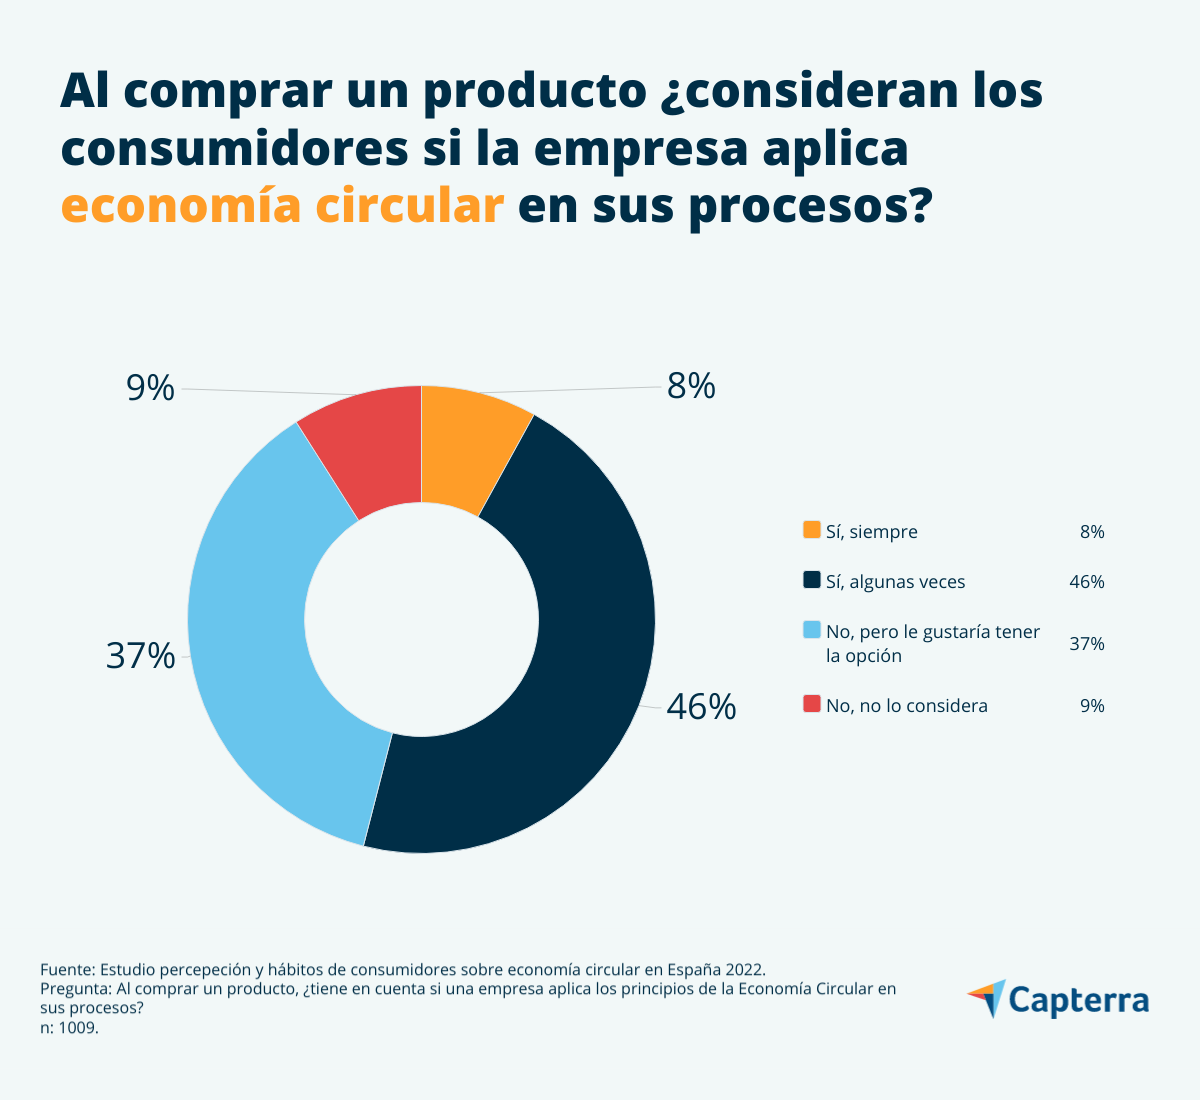 Poco más de la mitad de los consumidores en España considera si la empresa aplica economía circular en sus procesos cuando compra un producto.